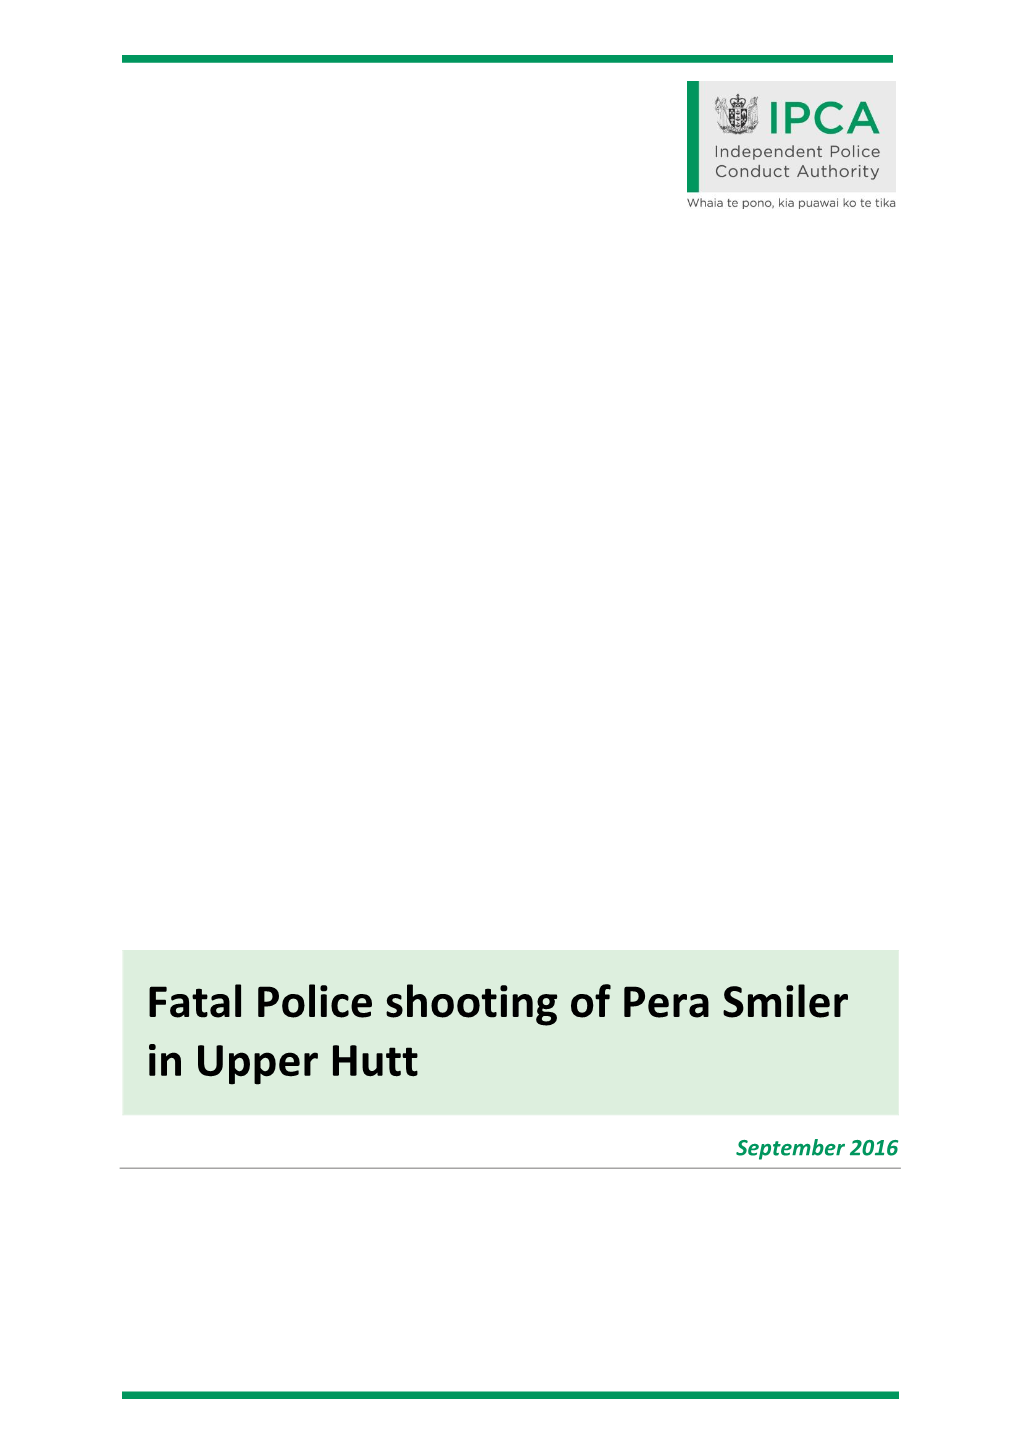 Fatal Police Shooting of Pera Smiler in Upper Hutt